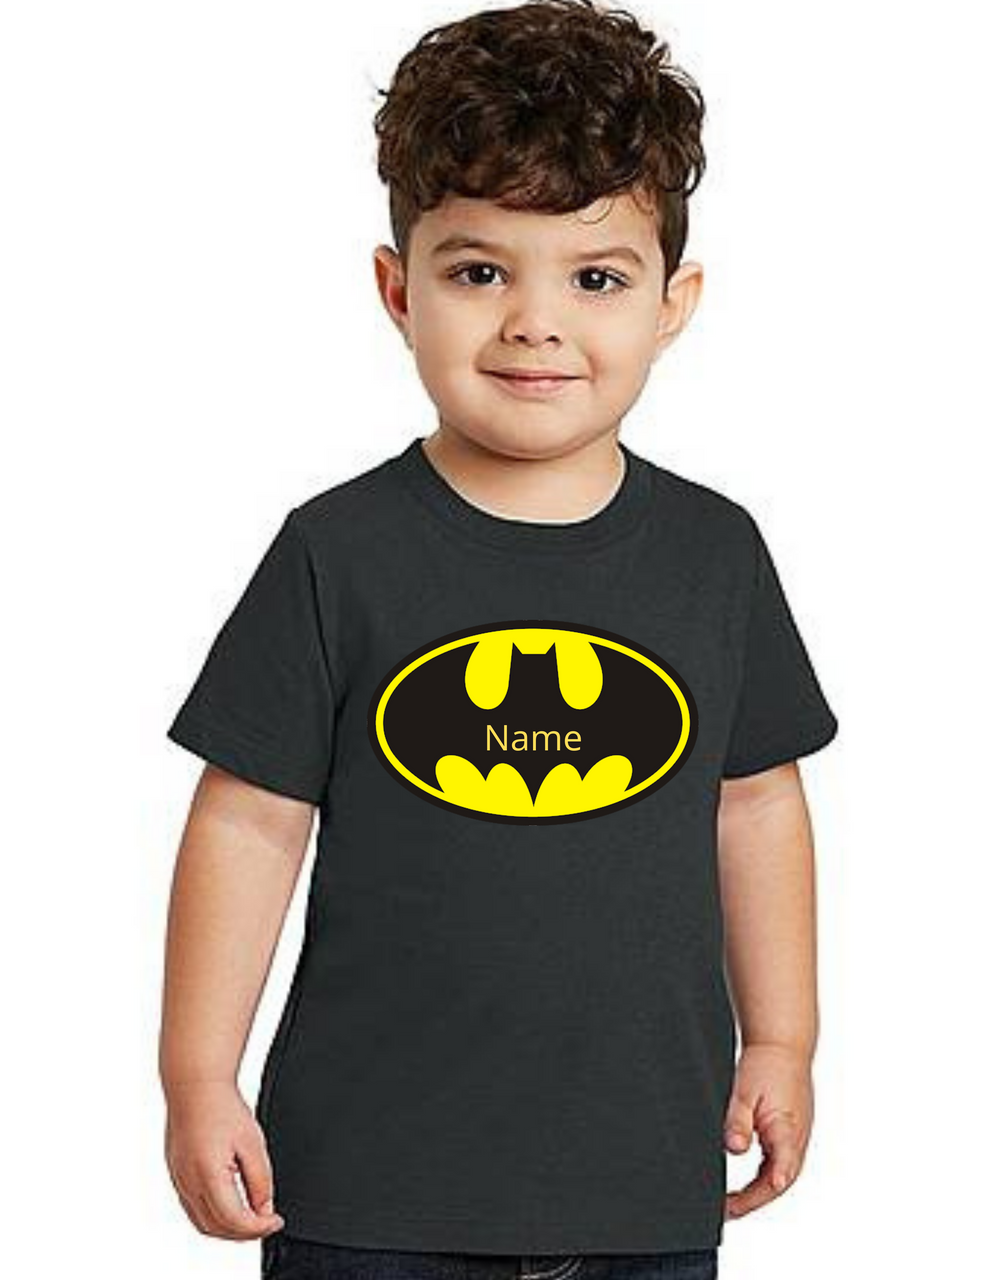 Roma Boy Batman theme T-shirts kids T-shirt, bday tshirts, Boy's tshirts